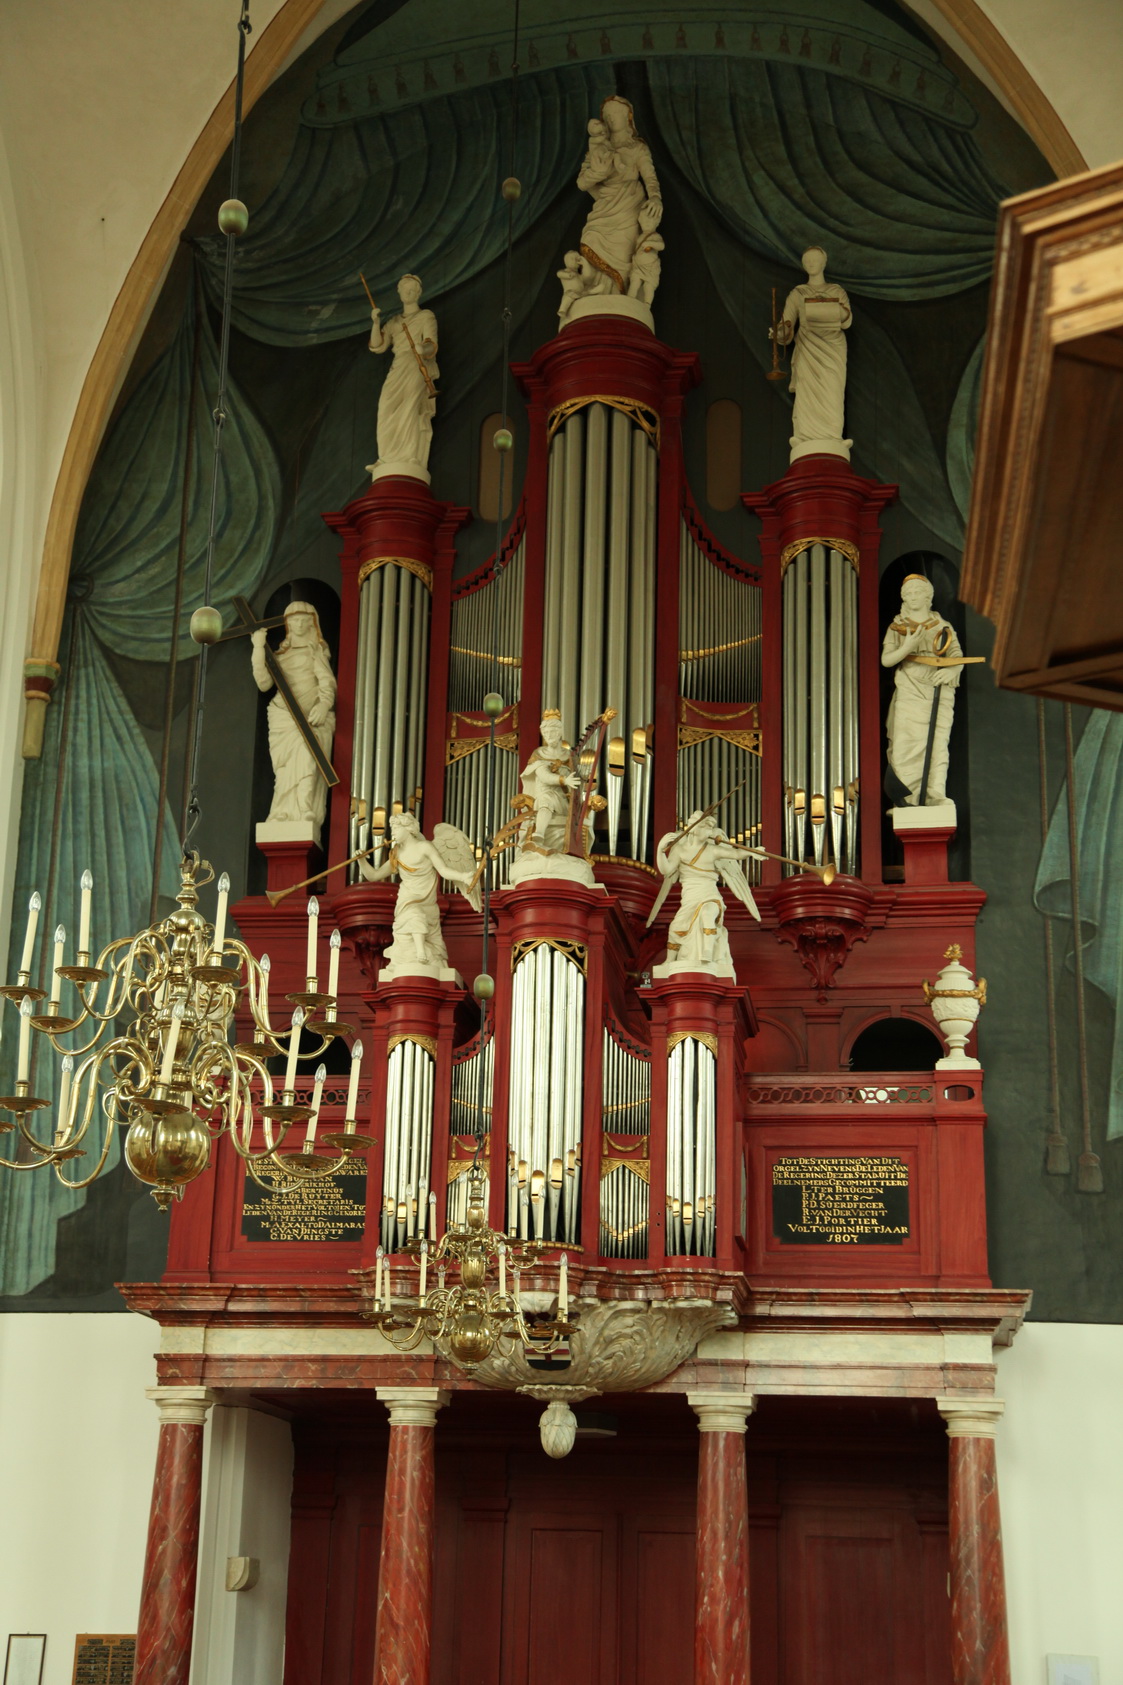 Het Rudolph Knol-orgel uit 1806 in de grote of Sint Stephanus kerk in Hasselt